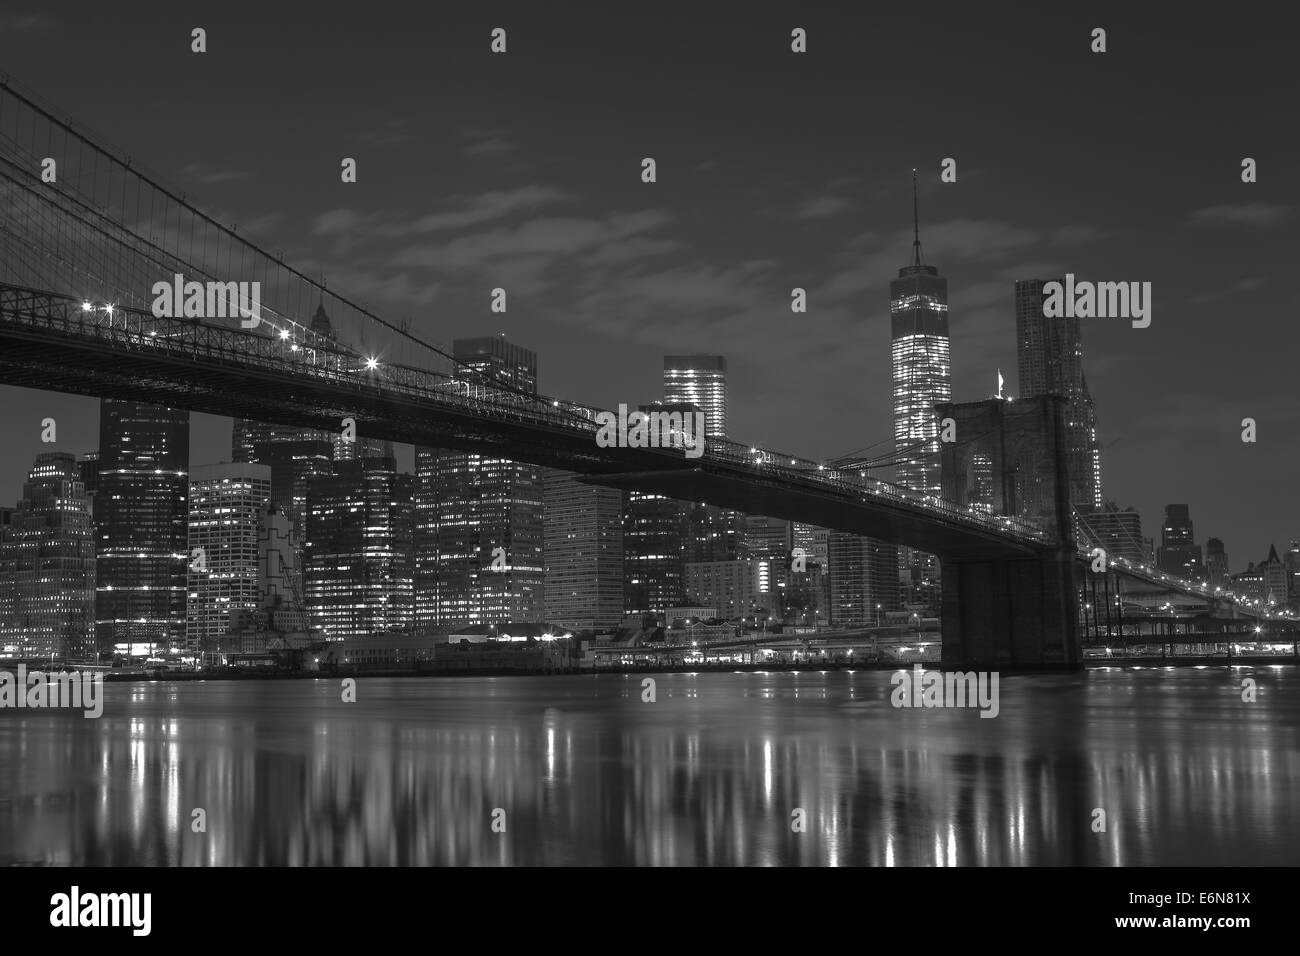 L'île de Manhattan et le pont de Brooklyn dans la nuit d'été à New York. Photo a été tourné du côté de Brooklyn. Banque D'Images